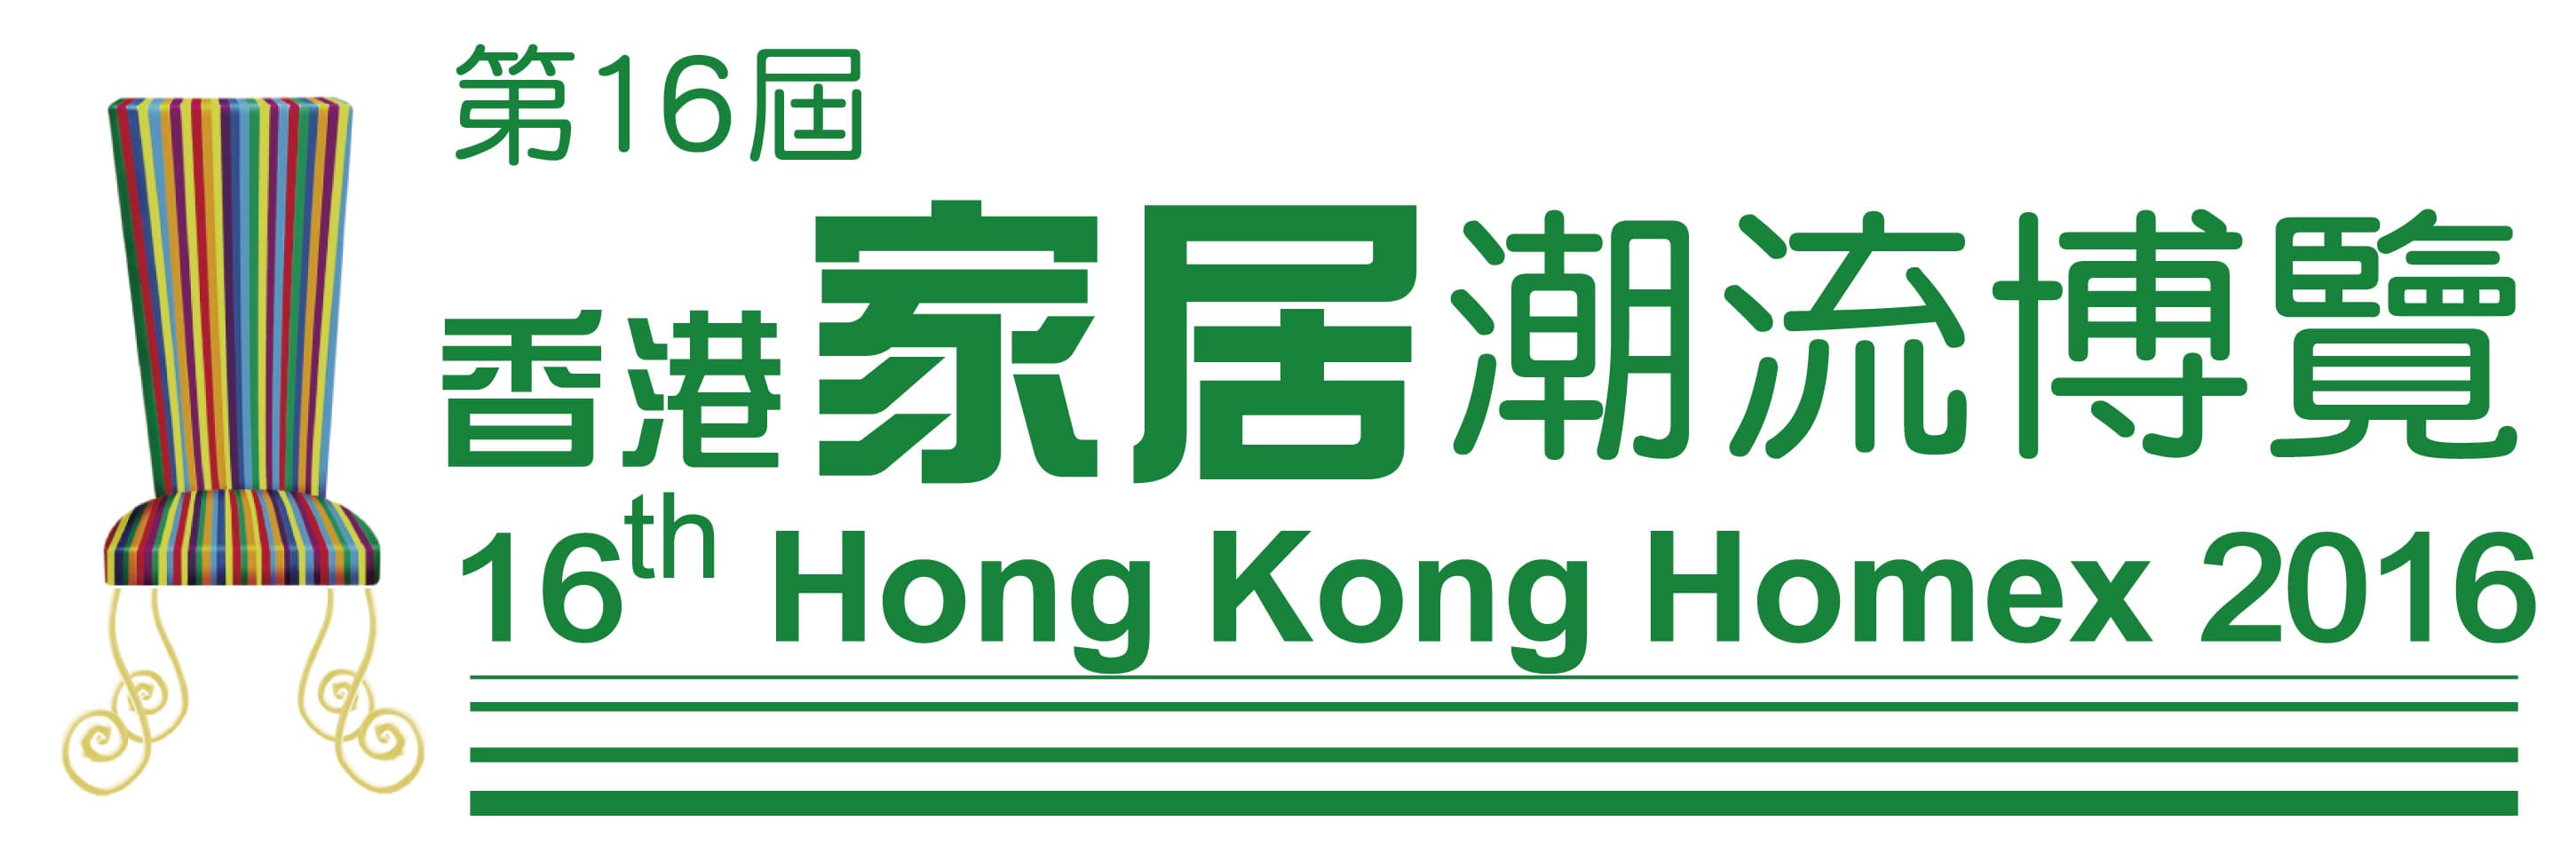 Hong Kong Homex 2016